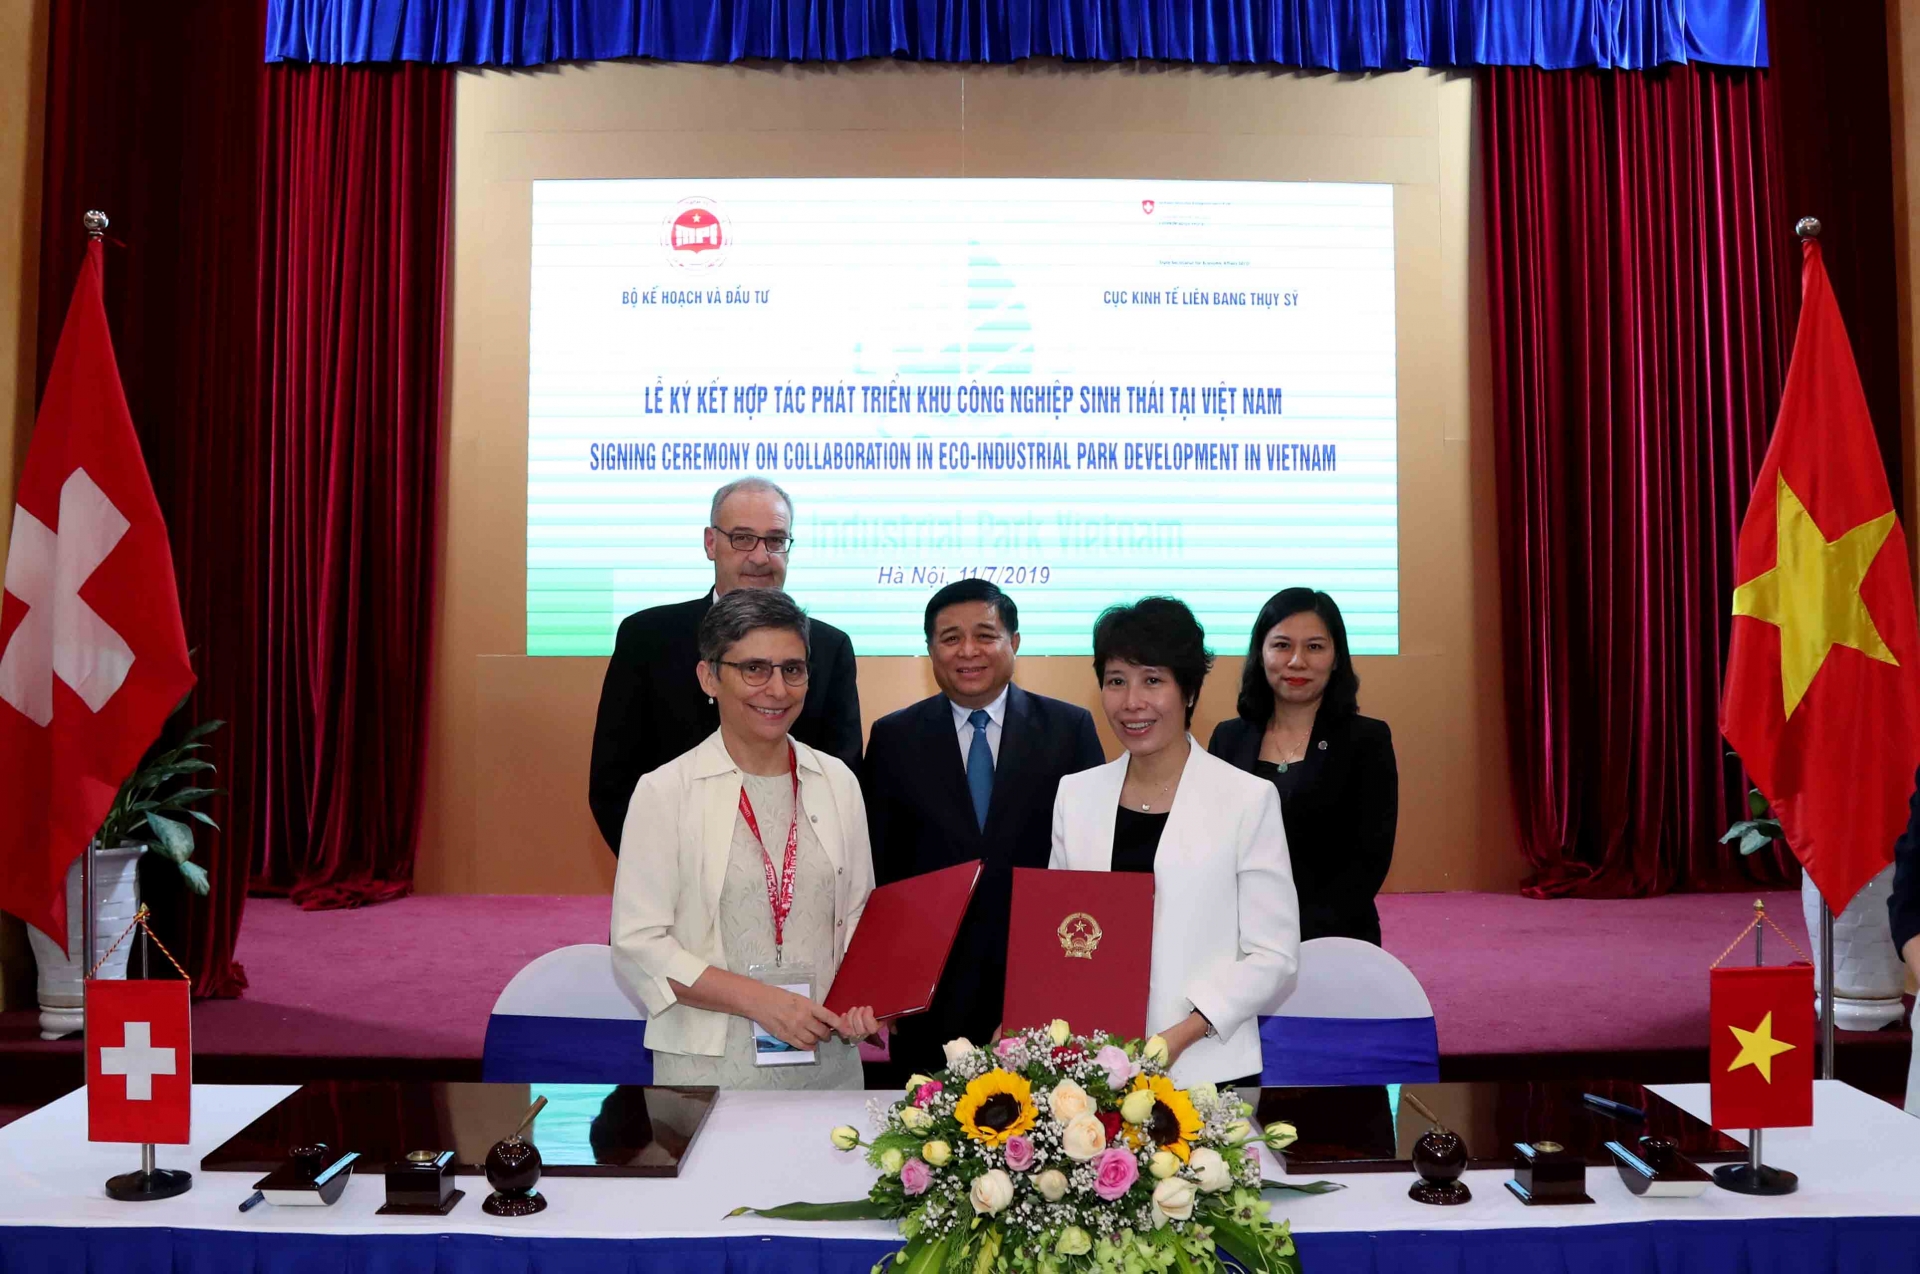 Switzerland supports Vietnam to develop eco-industrial parks